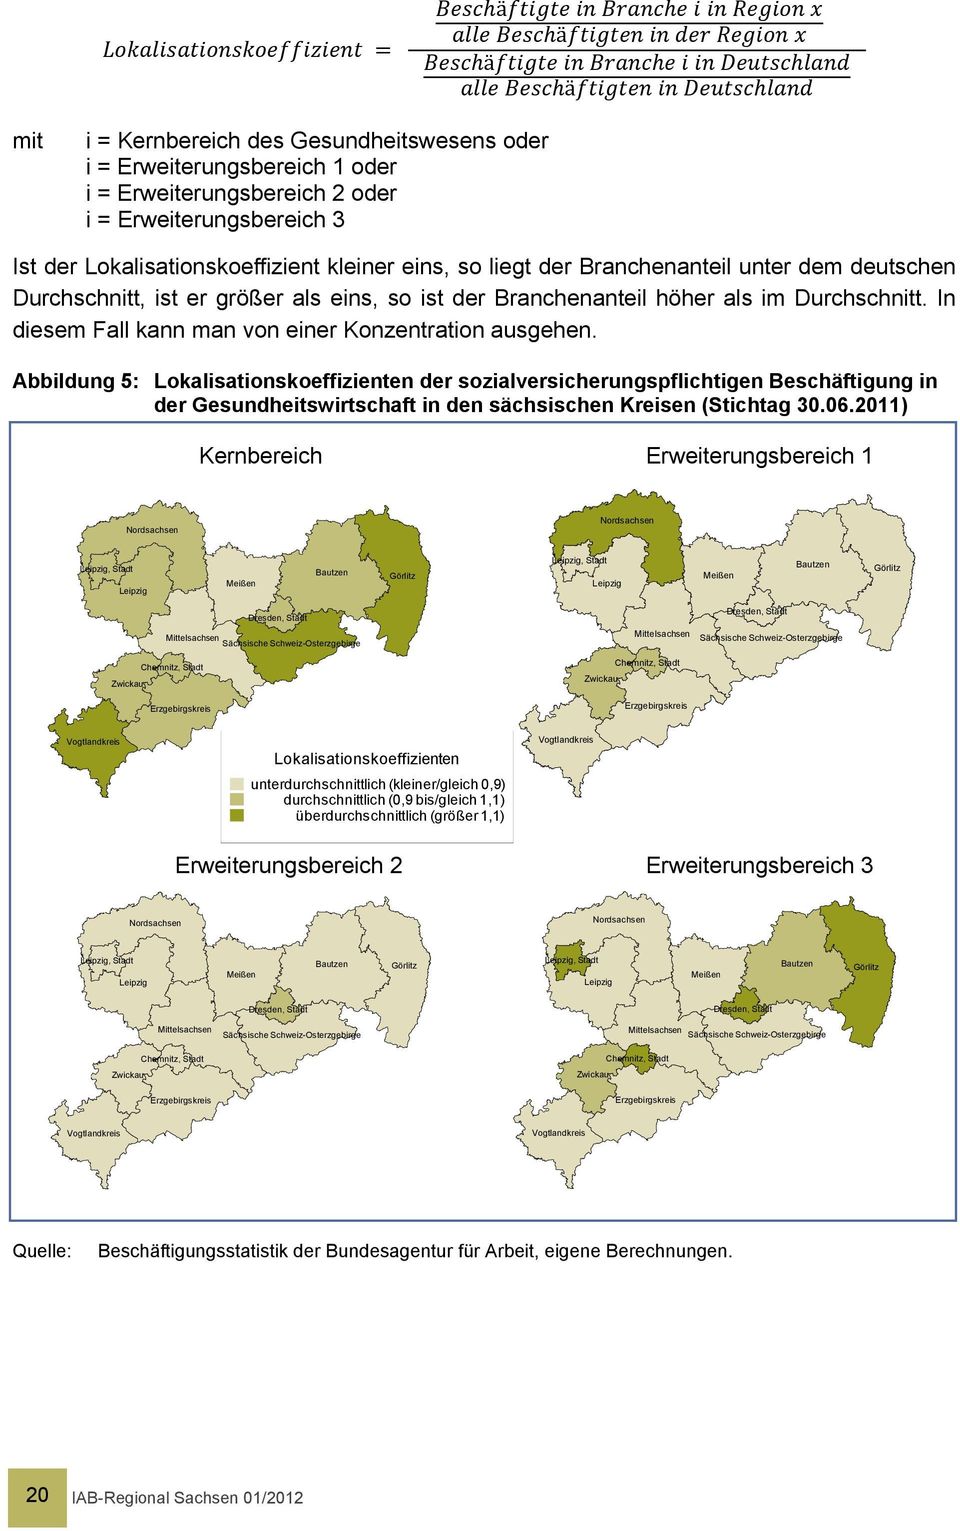 Abbildung 5: Lokalisationskoeffizienten der sozialversicherungspflichtigen Beschäftigung in der Gesundheitswirtschaft in den sächsischen Kreisen (Stichtag 30.06.